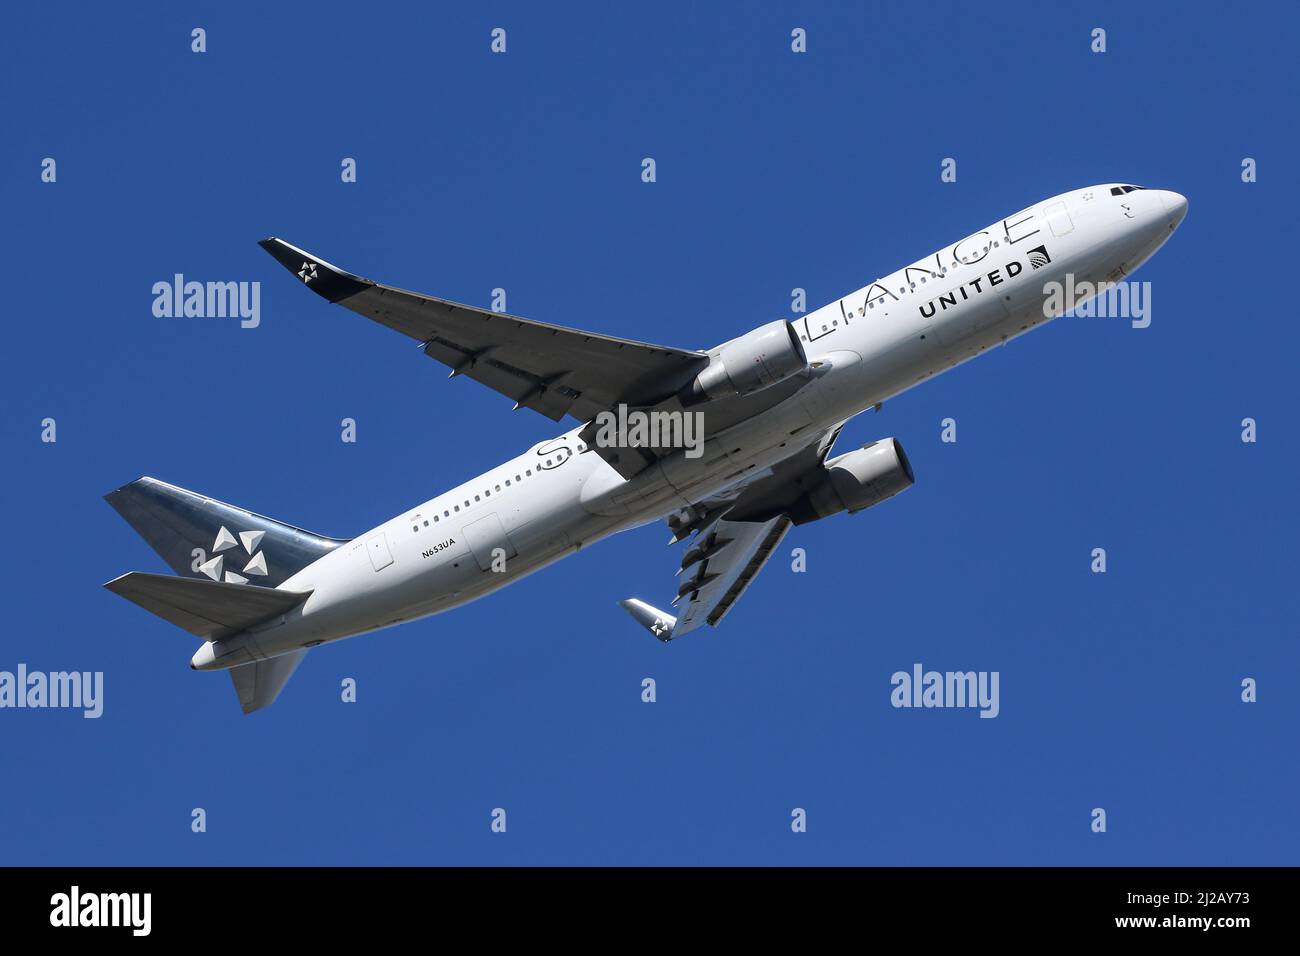 Un Boeing 767 exploité par United Airlines, portant une décoration spéciale Star Alliance, quitte l'aéroport de Londres Heathrow Banque D'Images